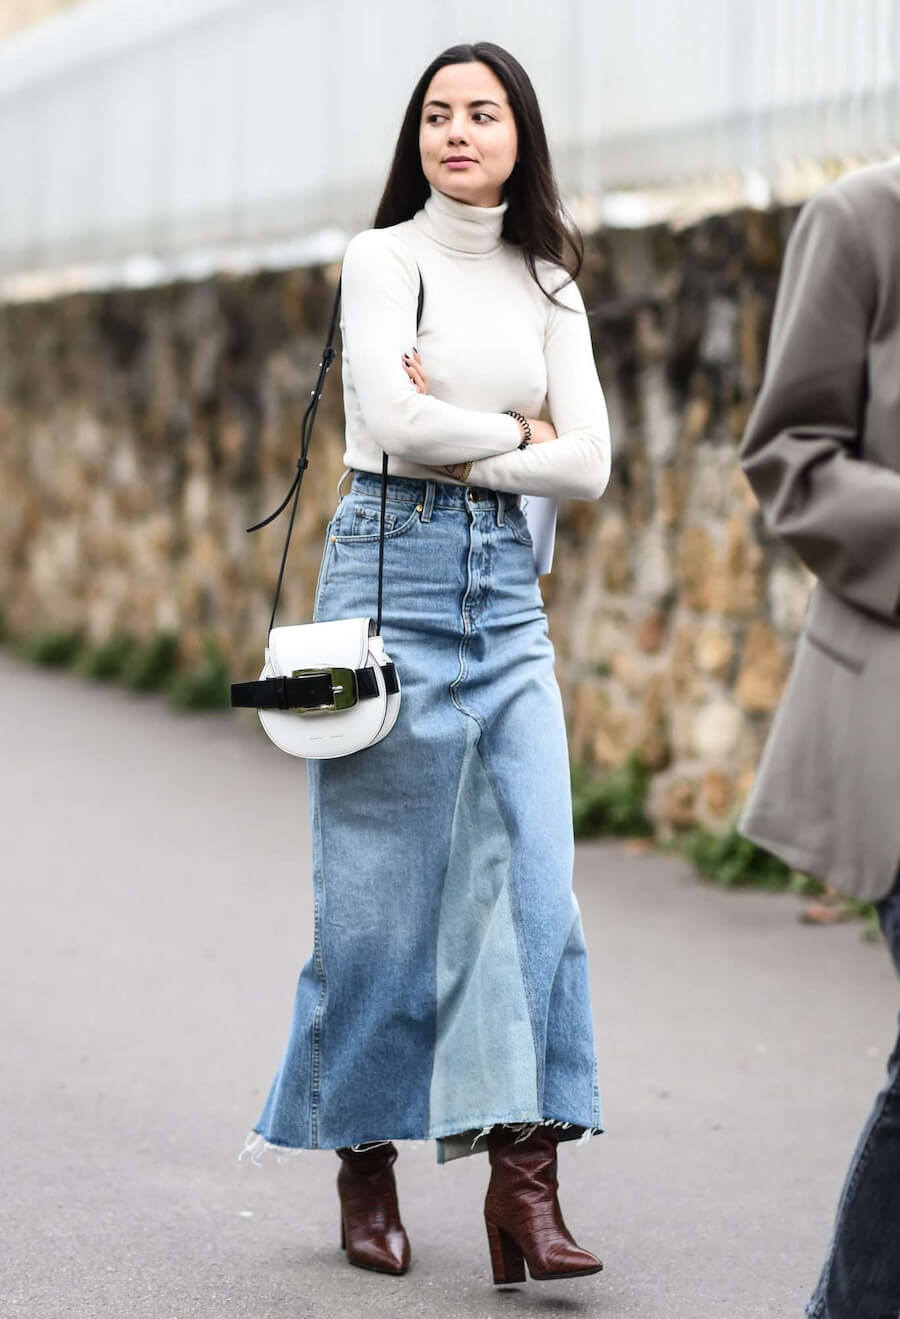 7 ý tưởng phối đồ với chân váy jean dài trendy cho cô nàng hiện đại